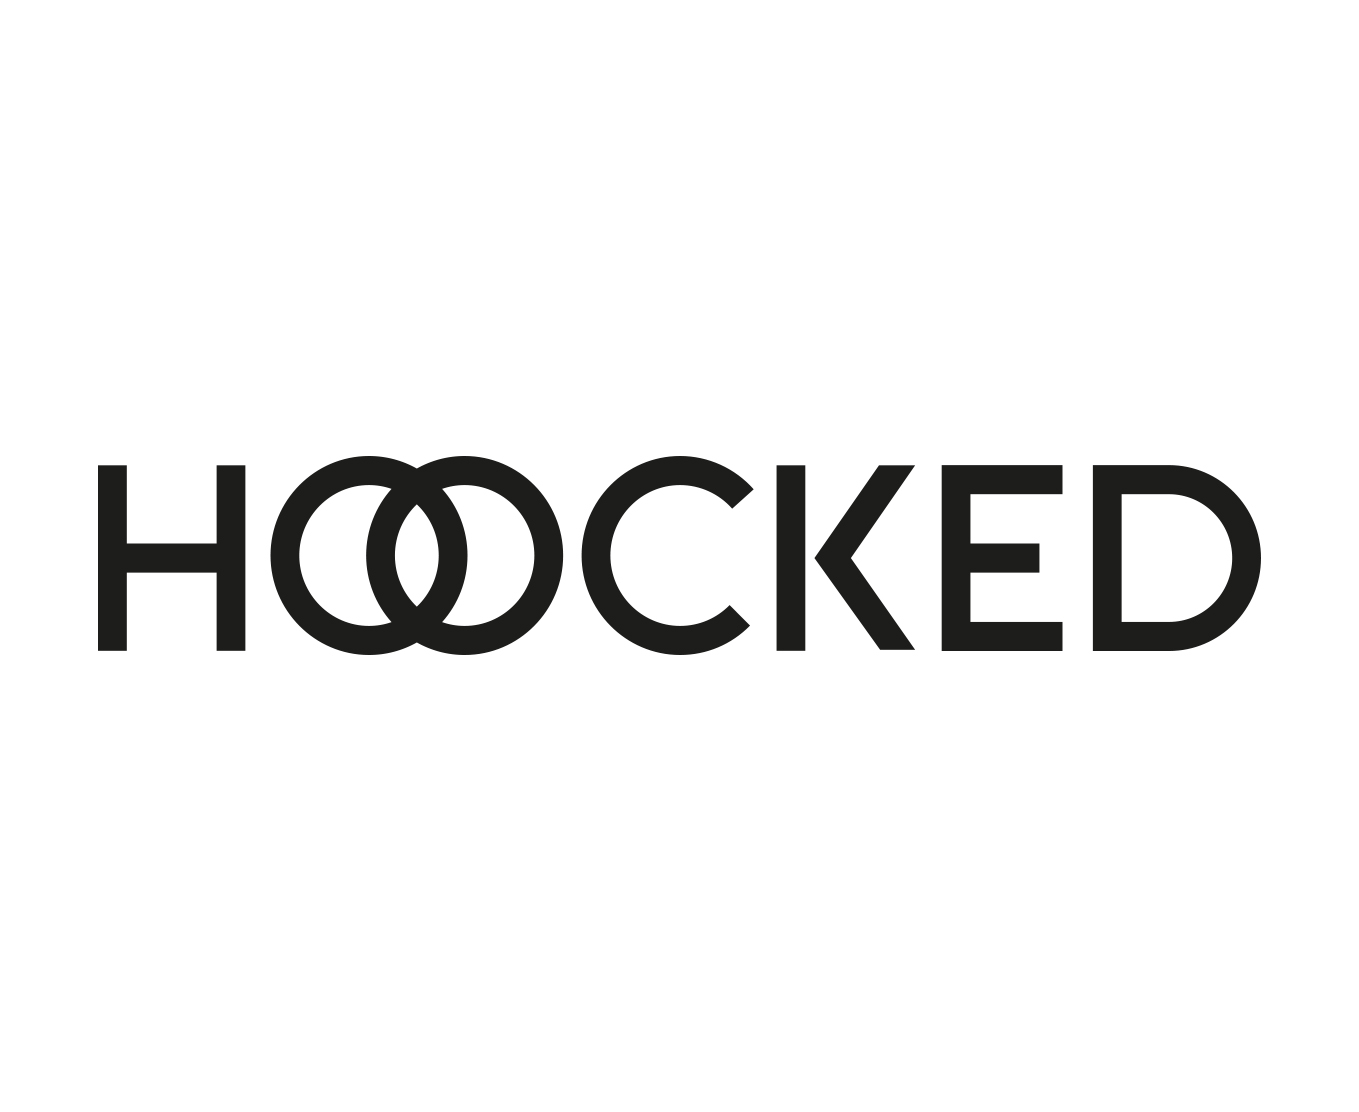 Hoocked logo